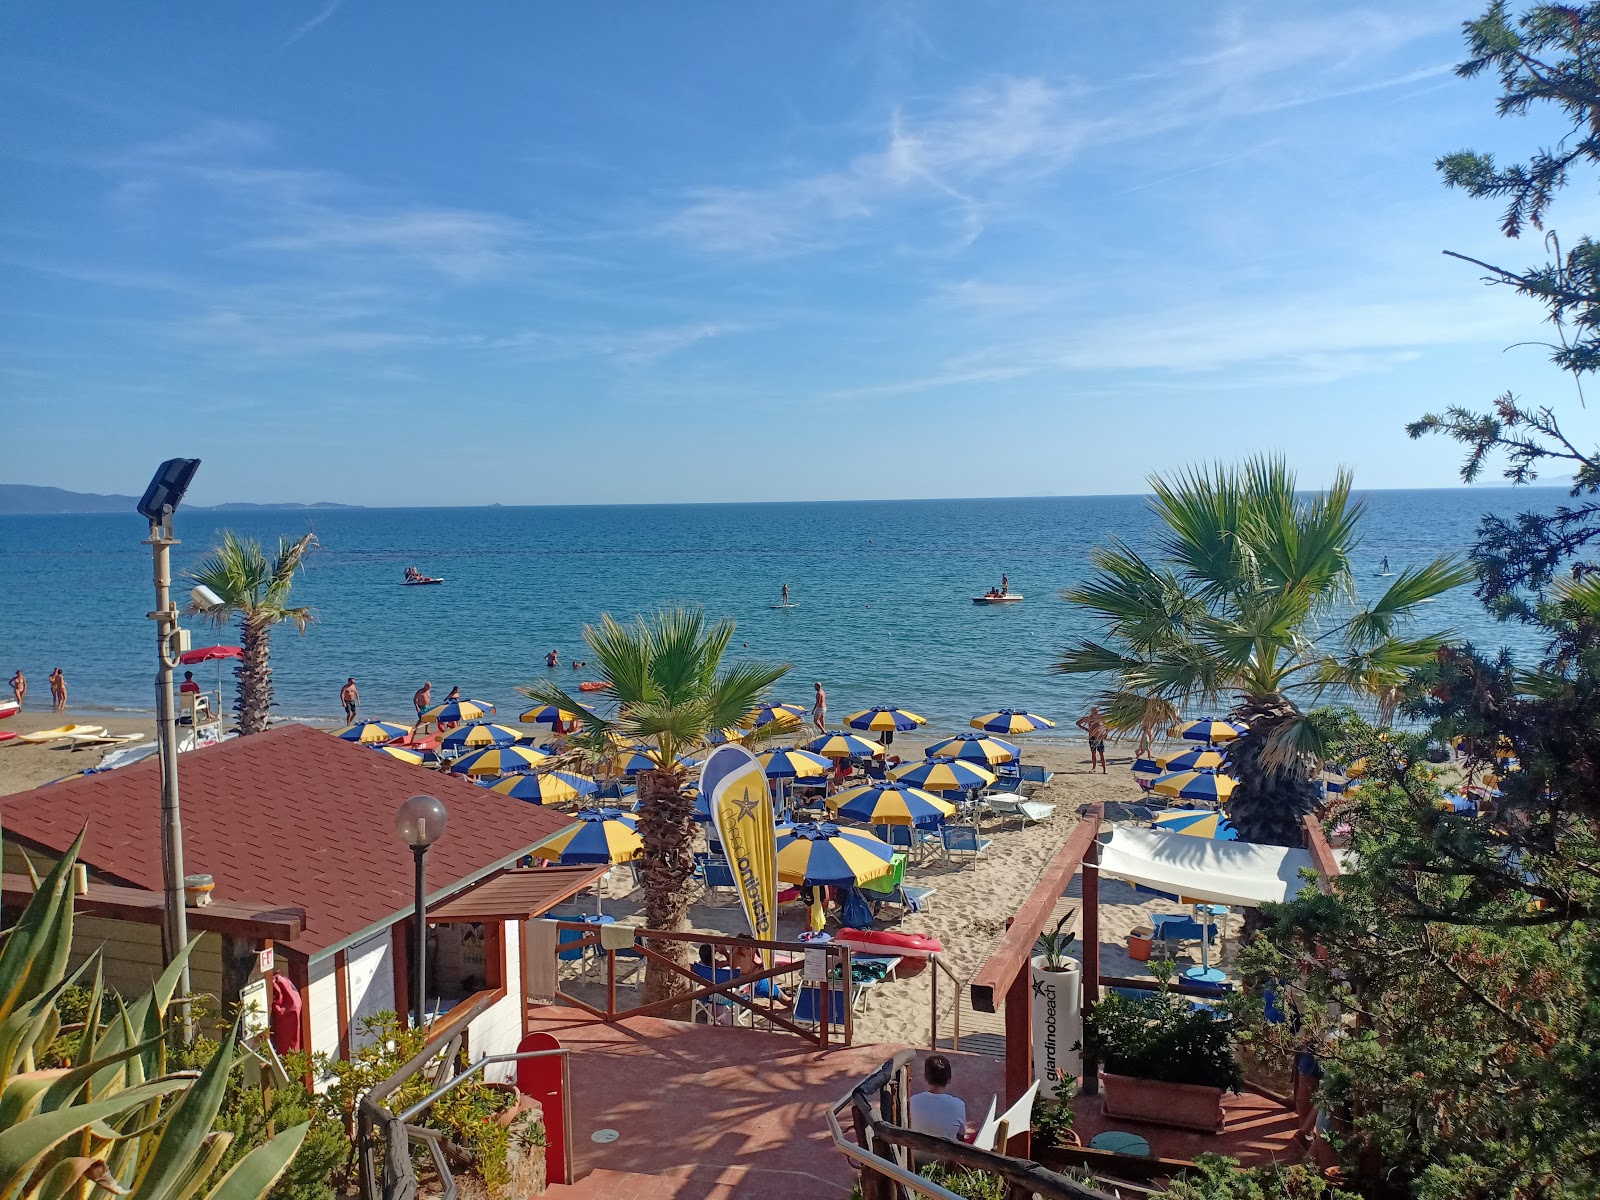 Spiaggia Golfo del Sole'in fotoğrafı - Çocuklu aile gezginleri için önerilir